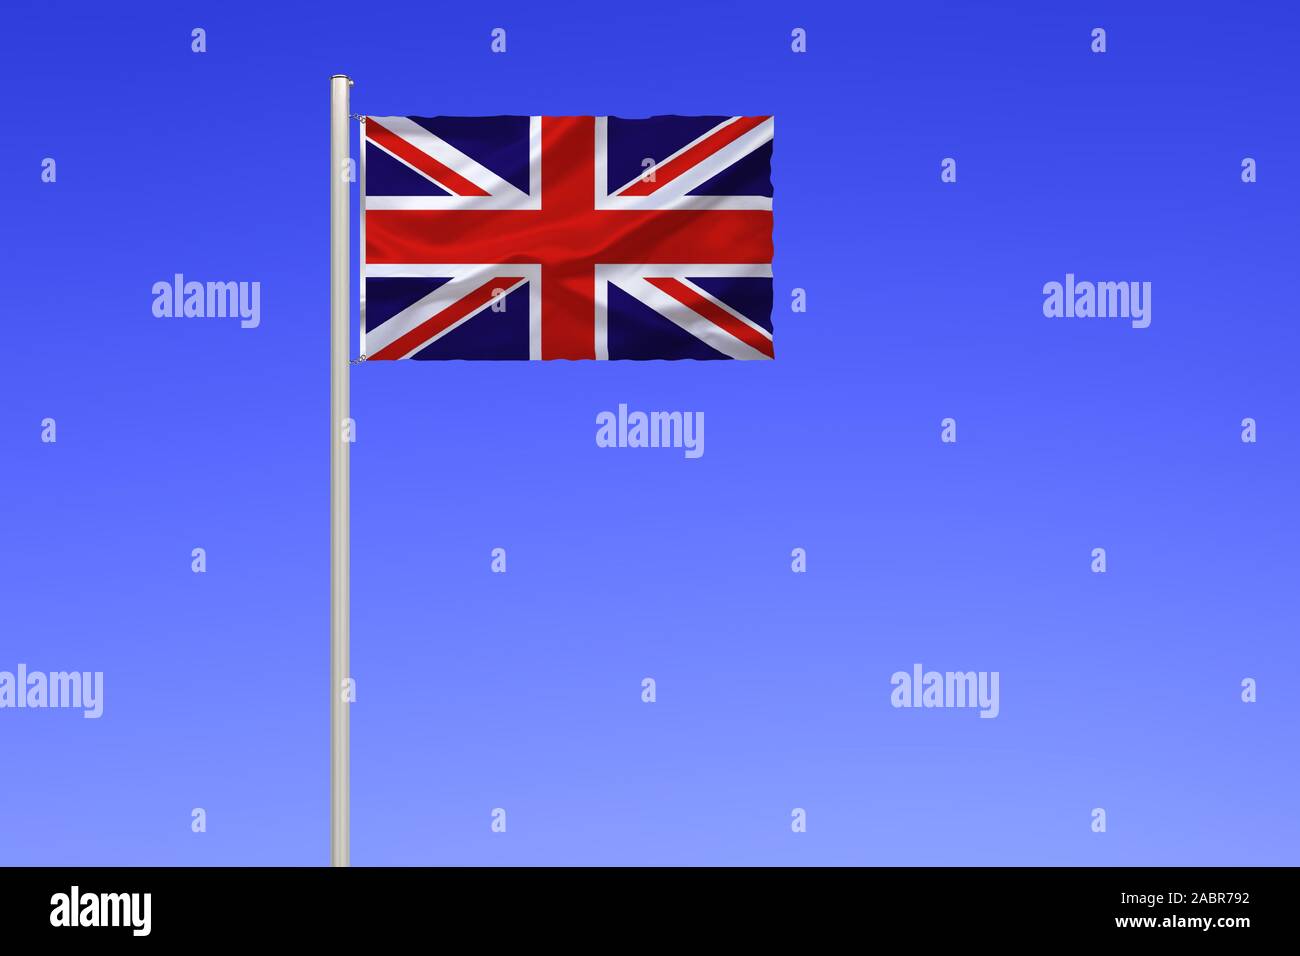 Flagge von Grossbritannien, Vereinigtes Koenigreich, Foto de stock